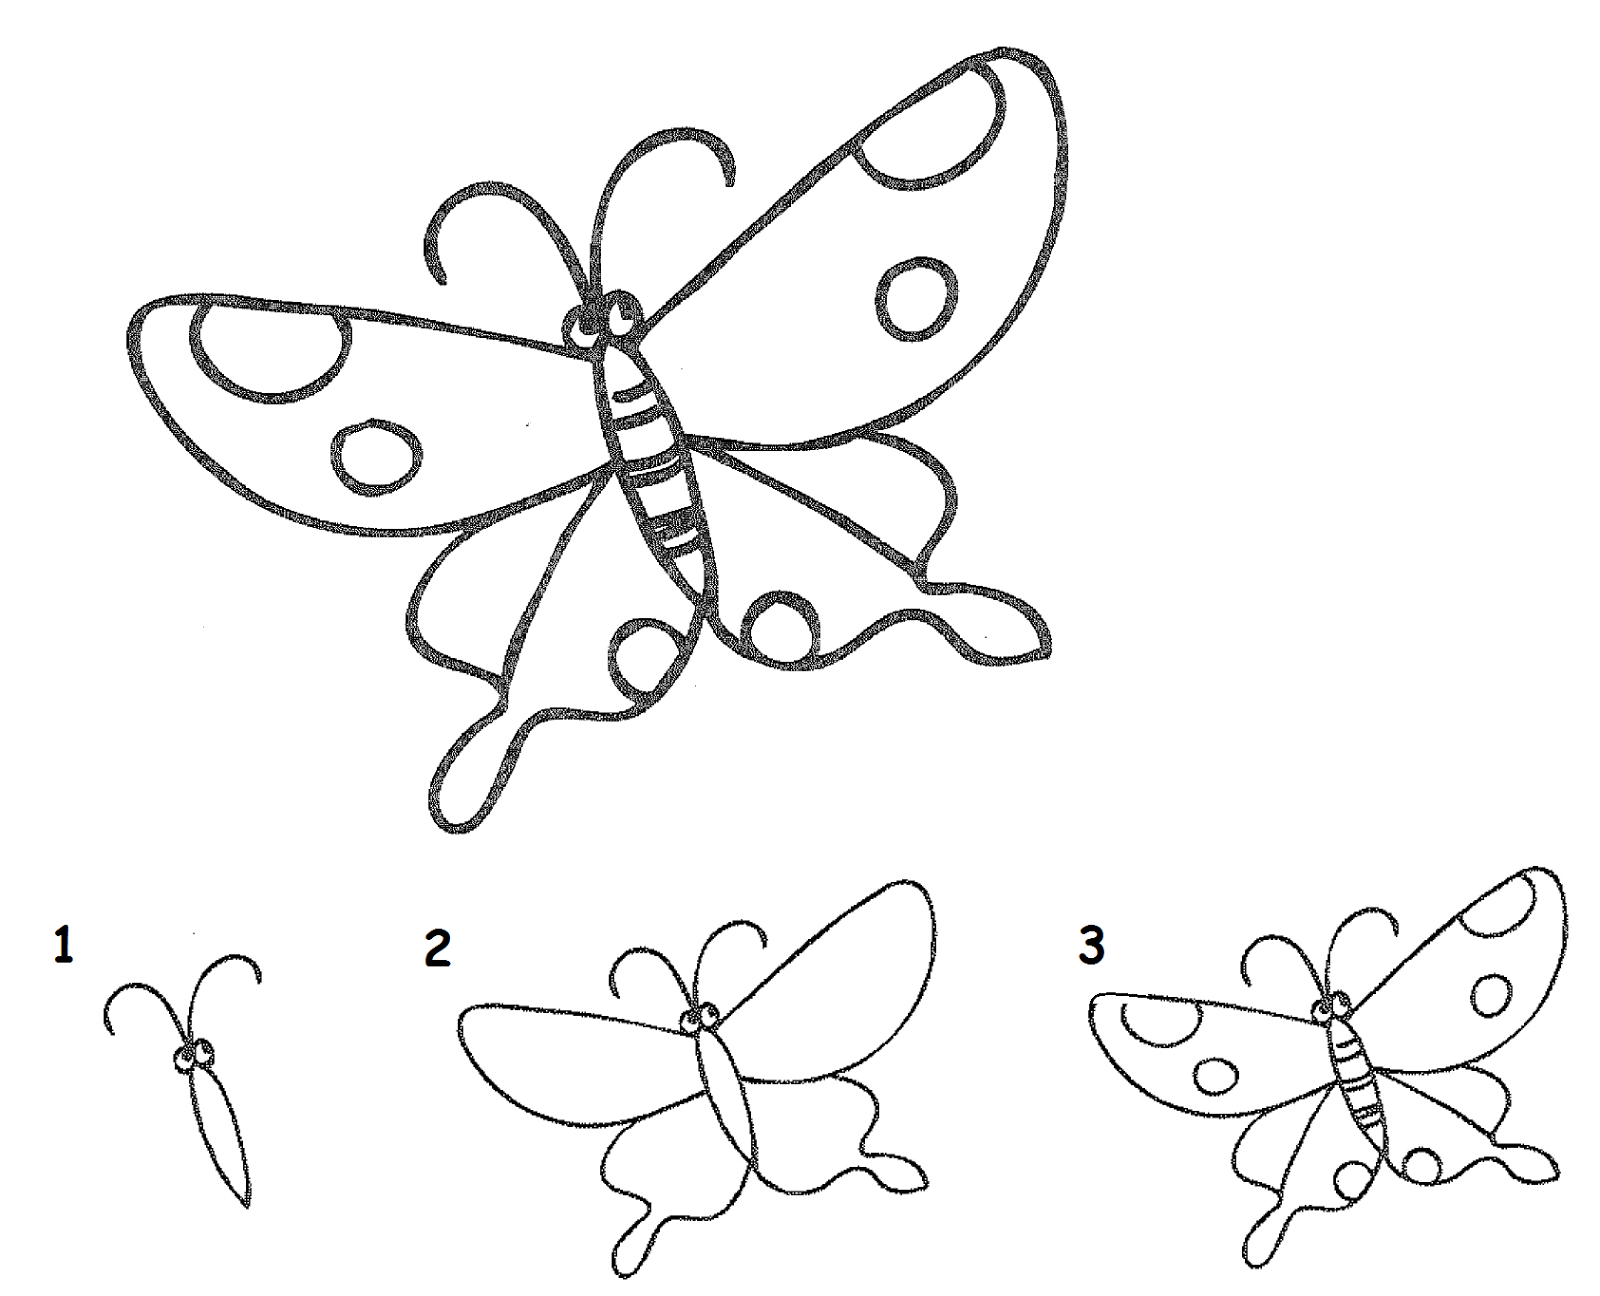 Resourceful-Parenting: Balajar Menggambar Kupu-kupu